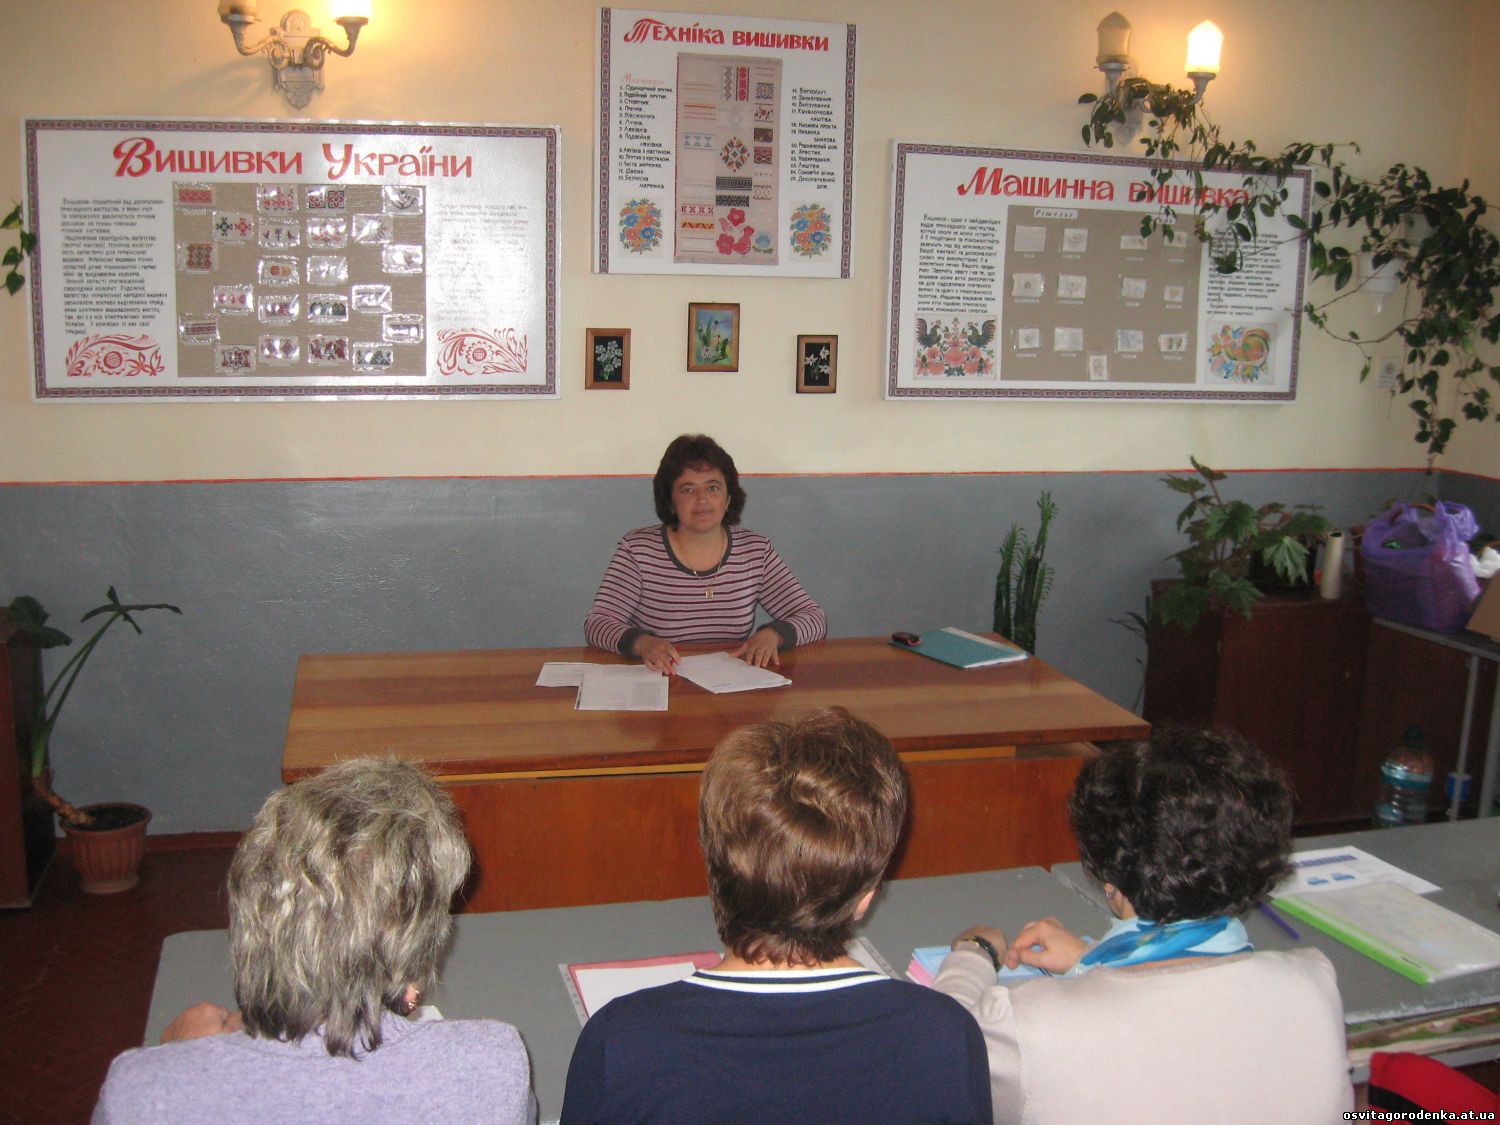 02 листопада 2015 року проведено семінар-практикум для молодих вчителів української мови і літератури